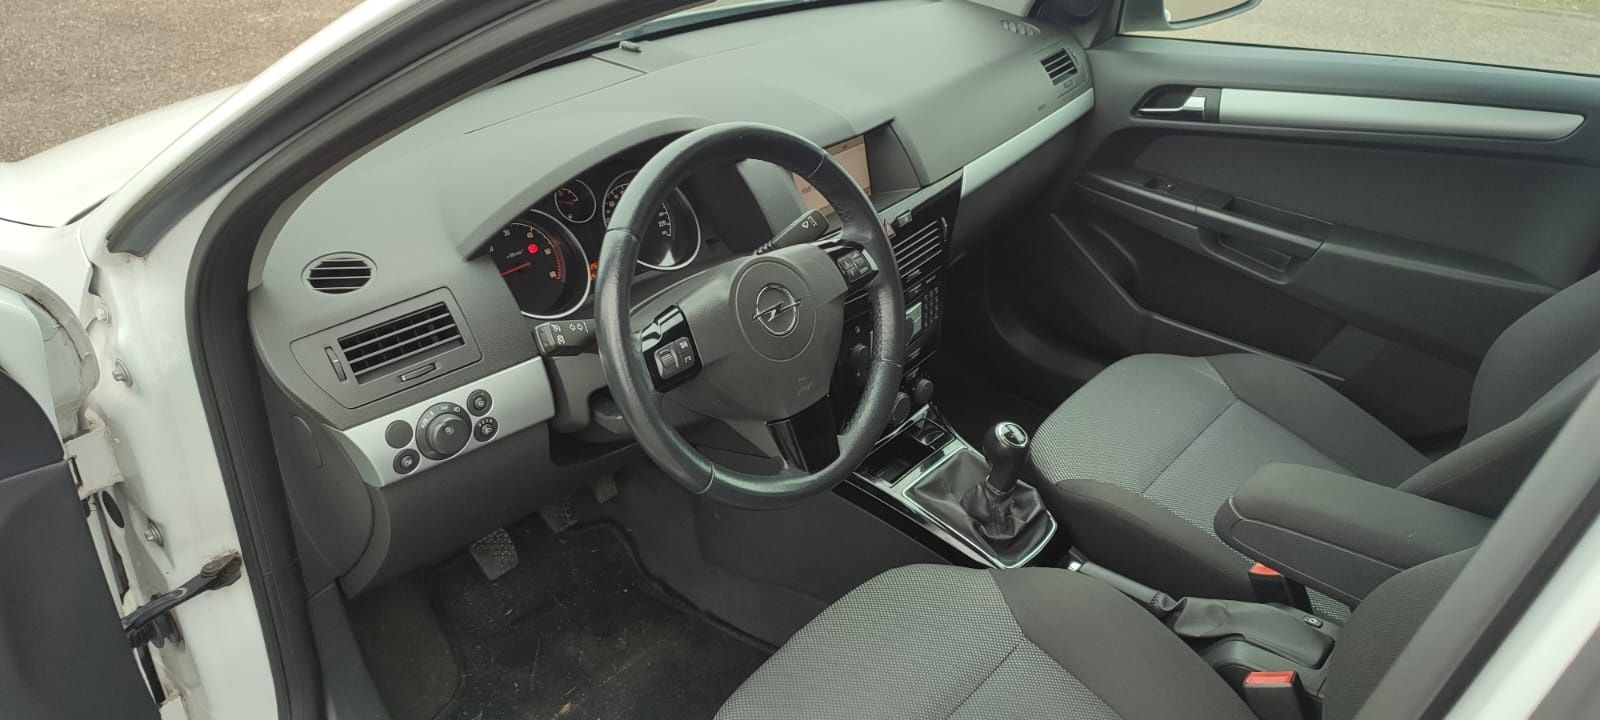 Opel Astra H, 1.7 CDTI, nawigacja, parktronik, skrzynia 6 biegów